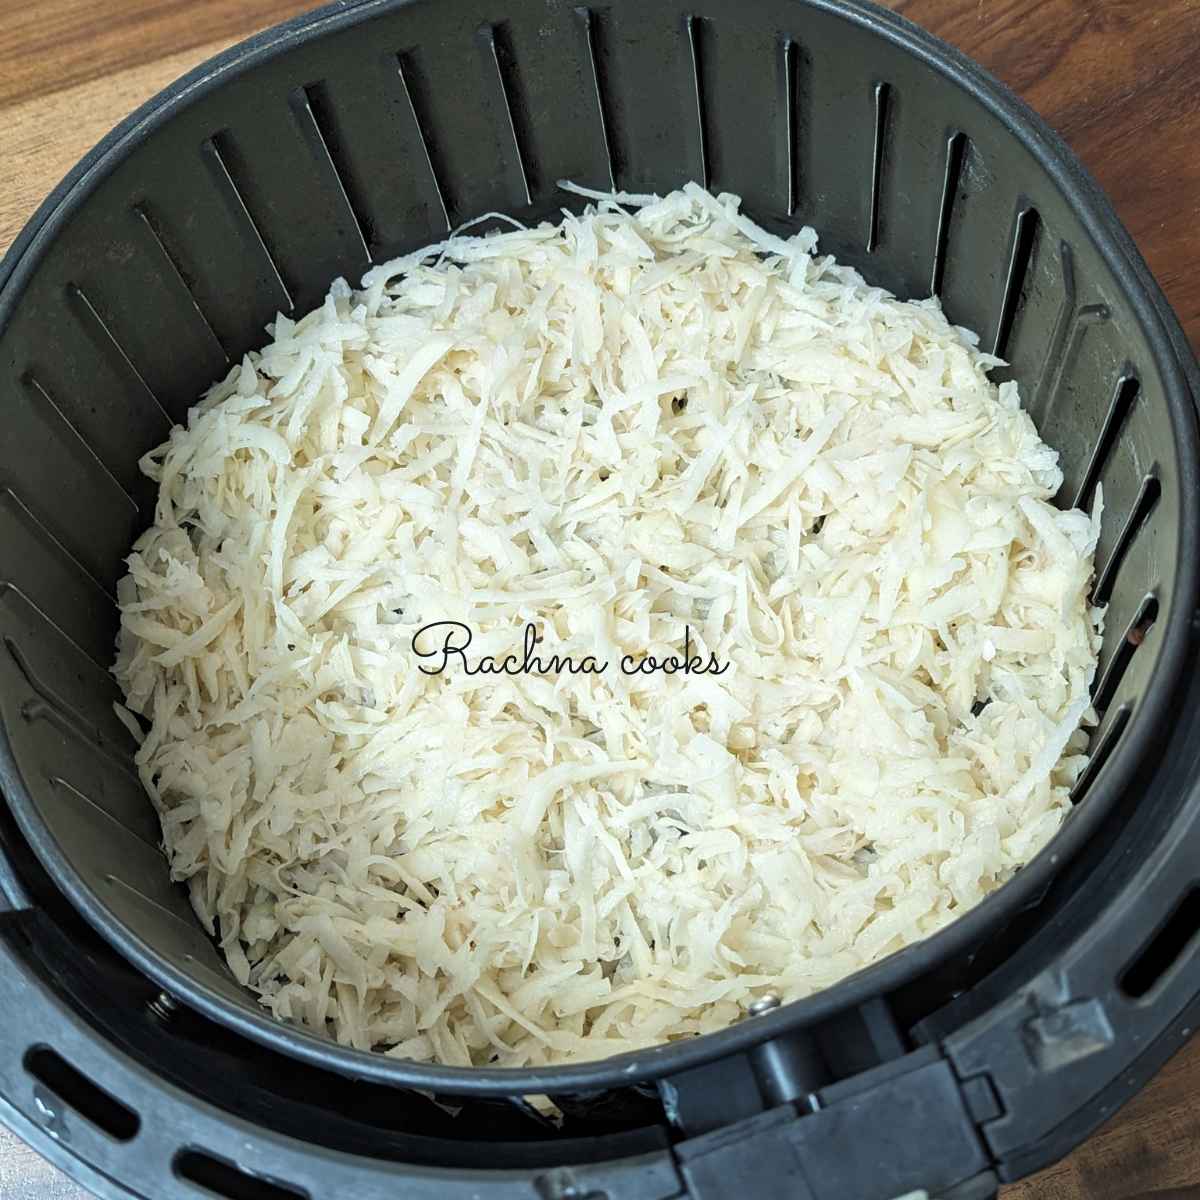 Shredded seasoned hash browns in air fryer basket